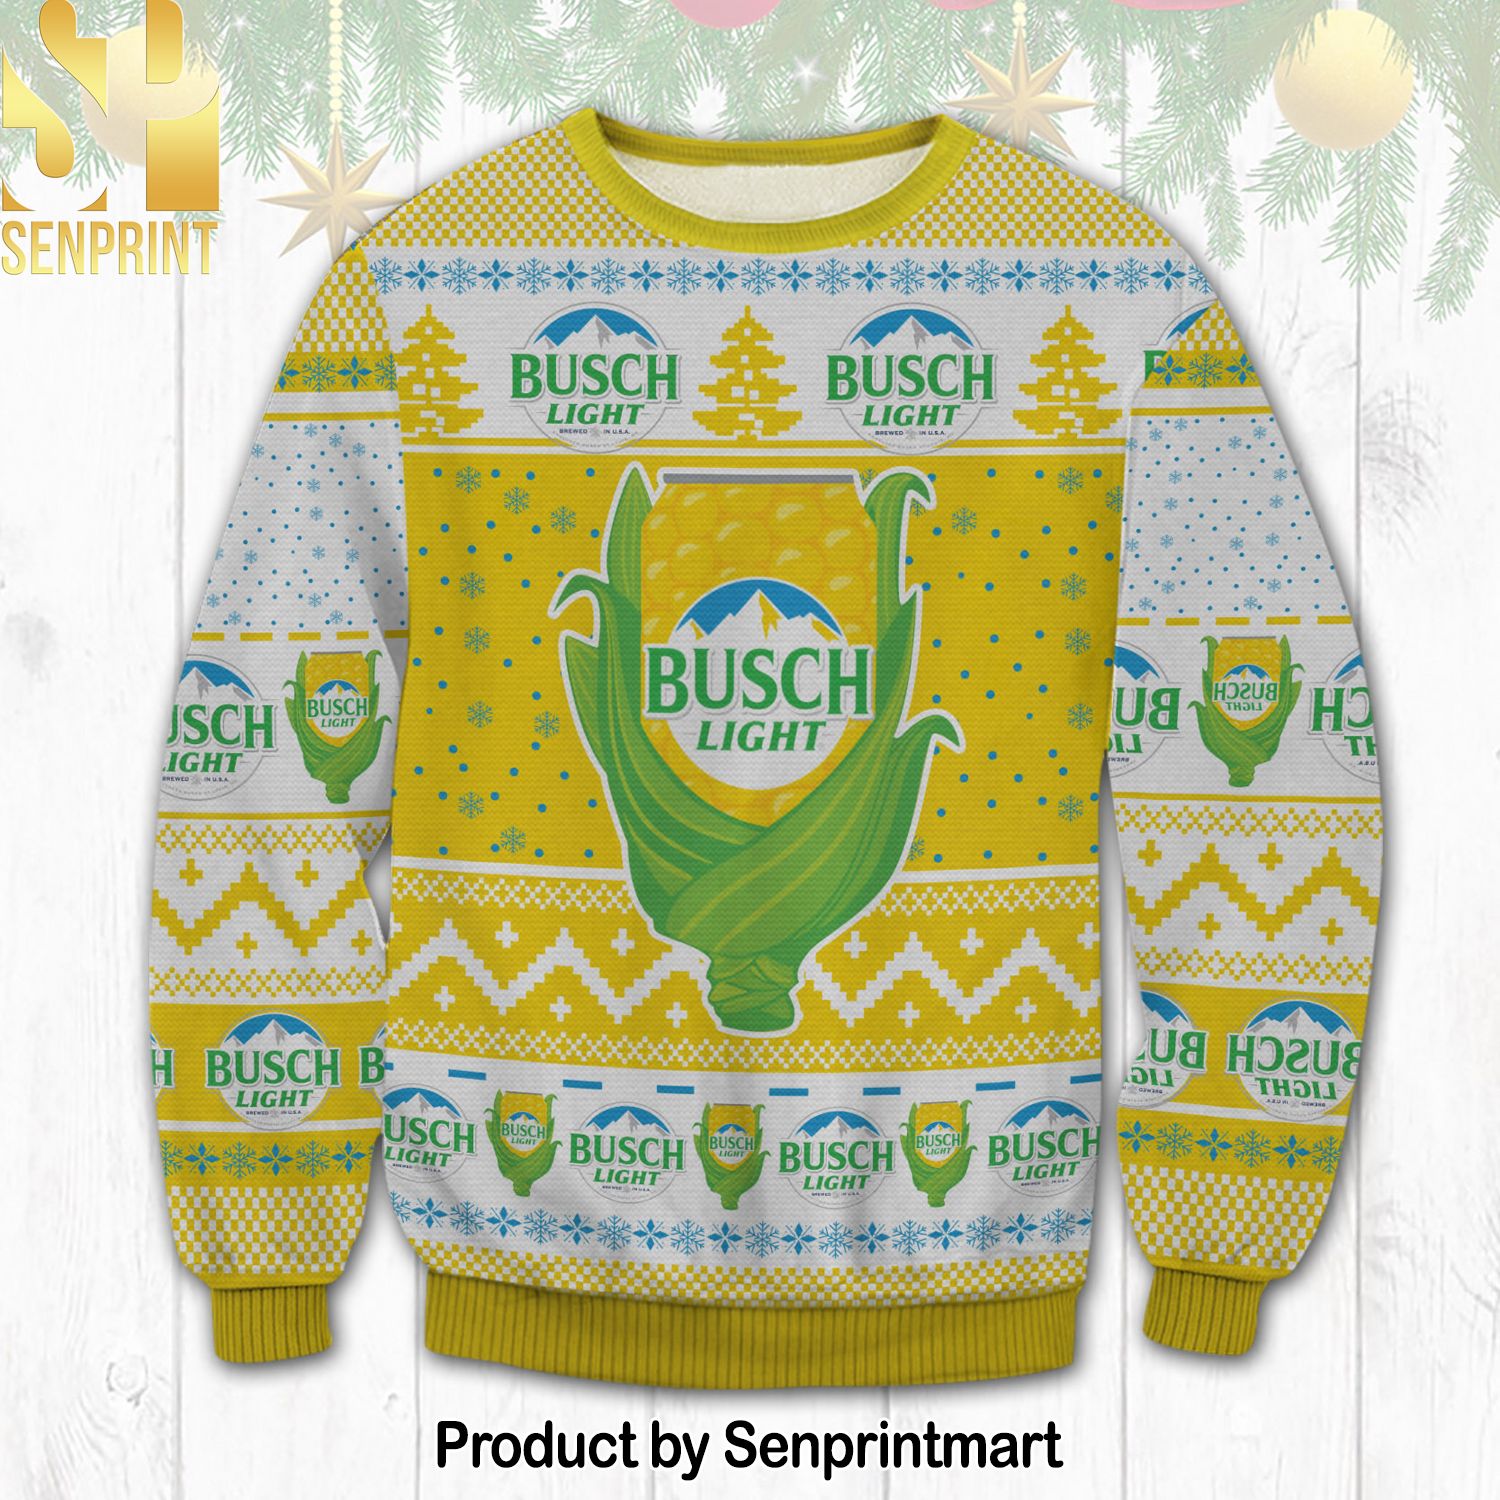 Busch Light Corn Knitting Pattern 3D Print Ugly Sweater